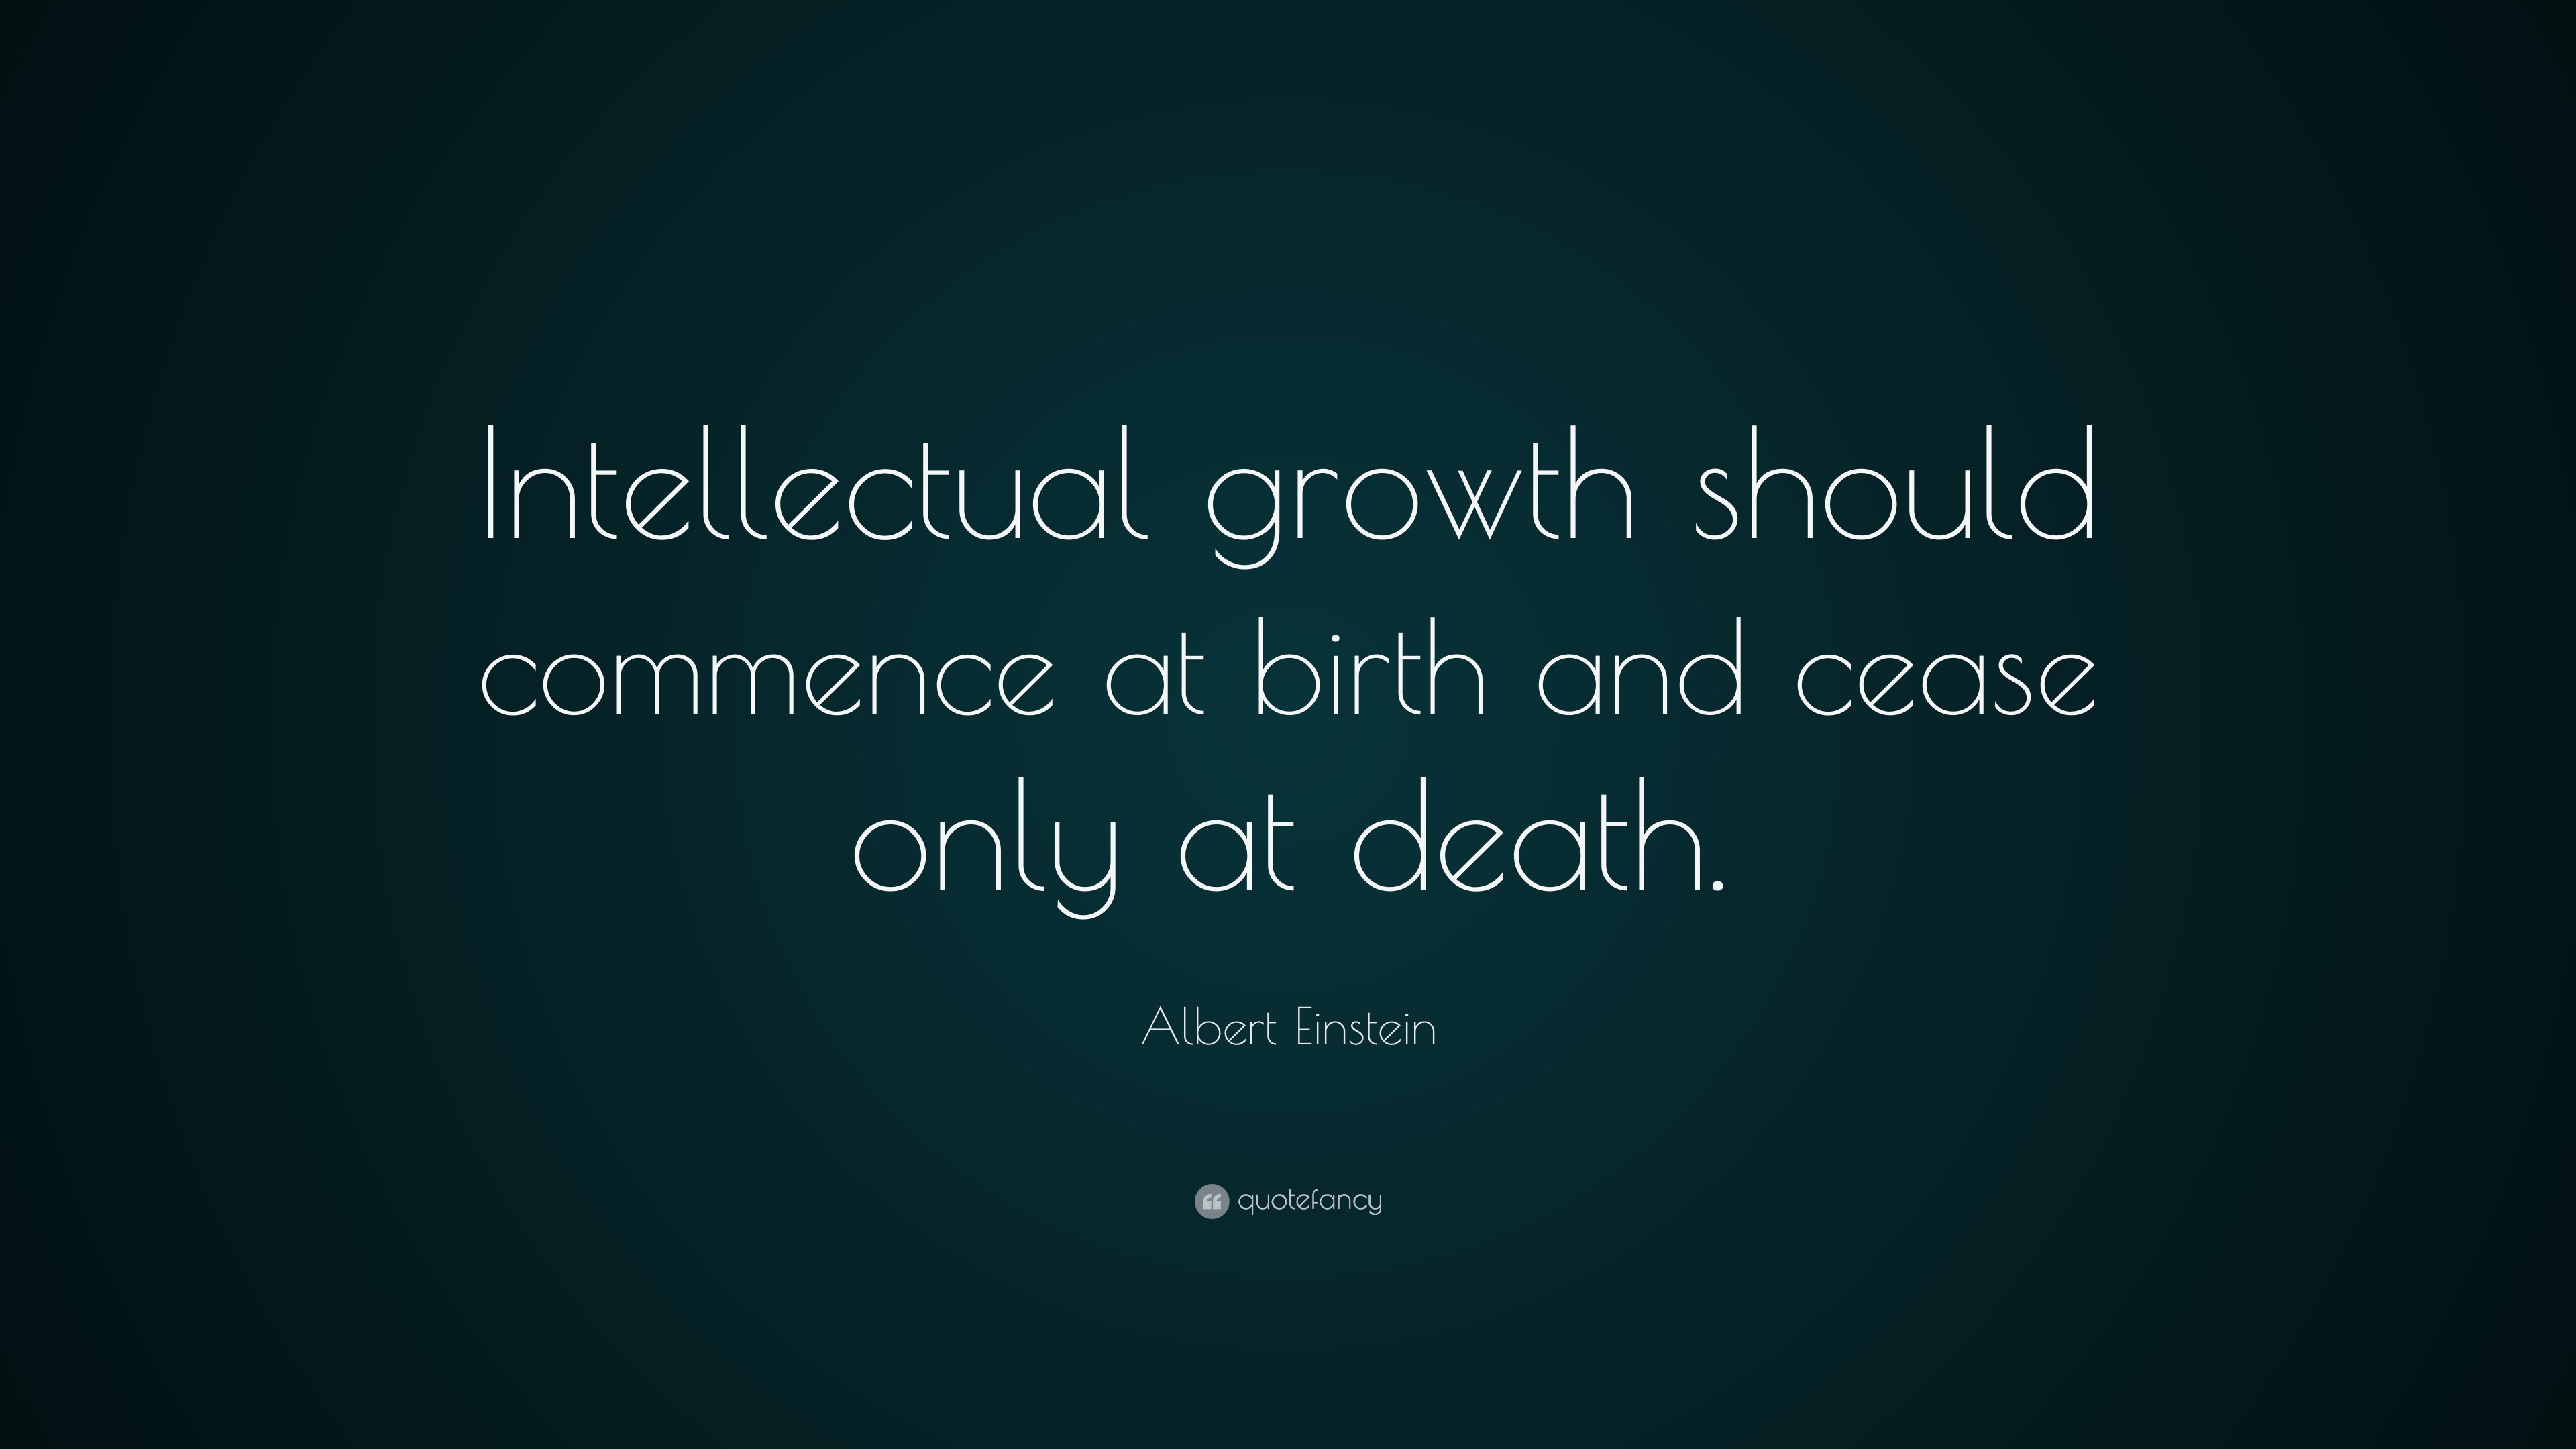 Albert Einstein Quote: "Intellectual growth should ...